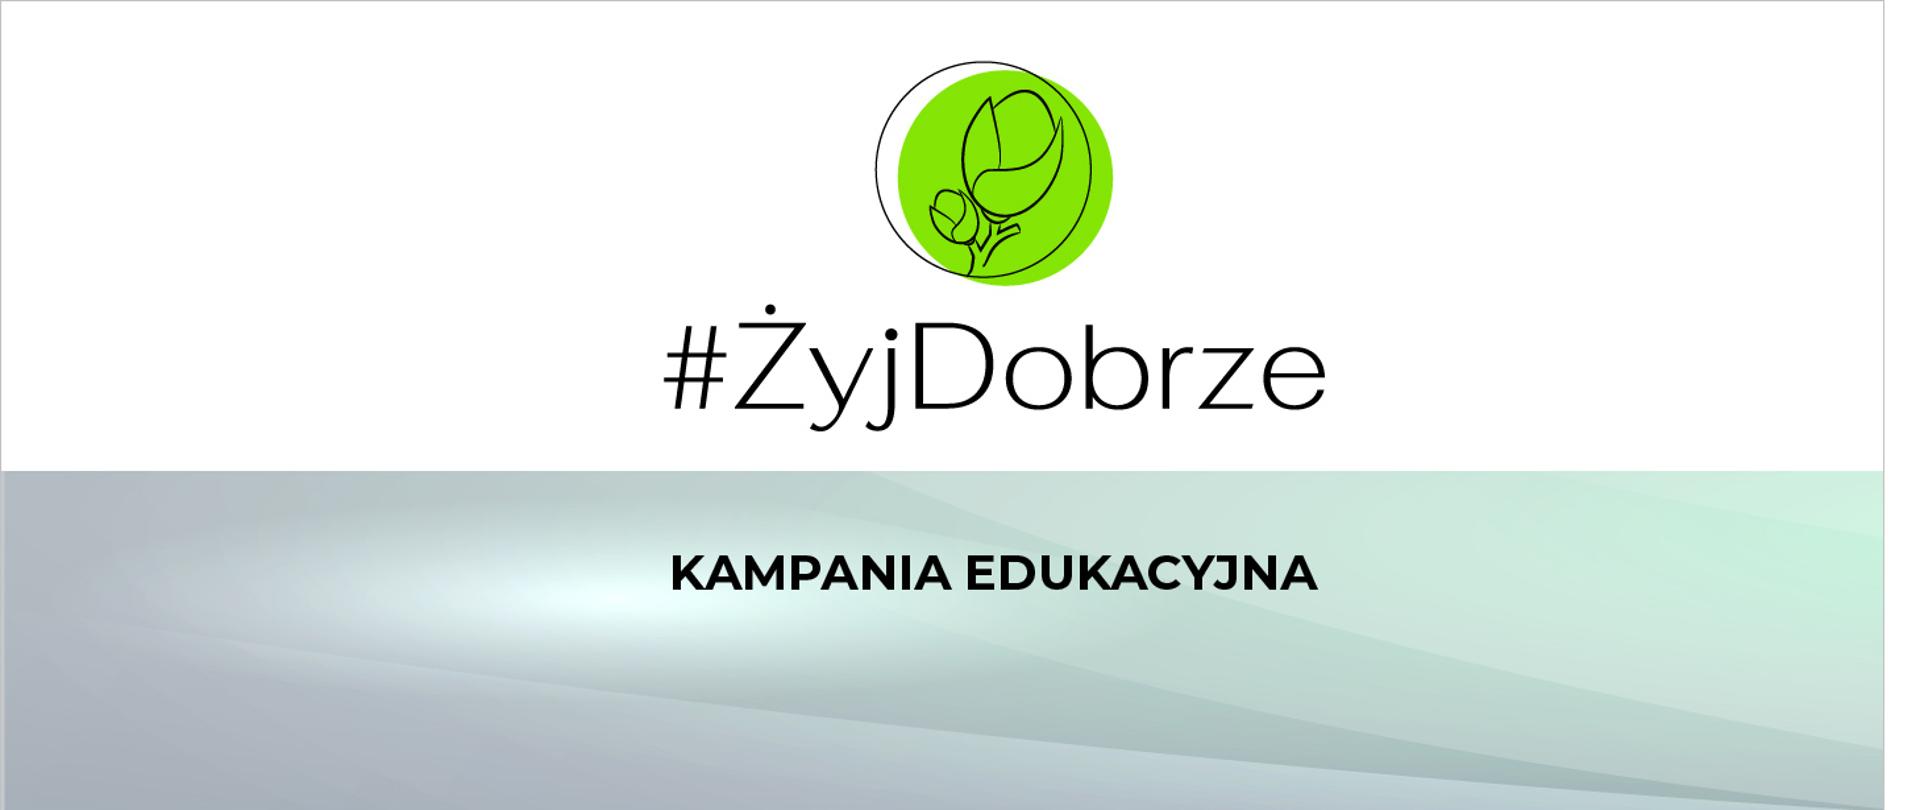 Logo kampanii #ŻyjDobrze przedstawiające dwa pąki na gałązce w kółku.